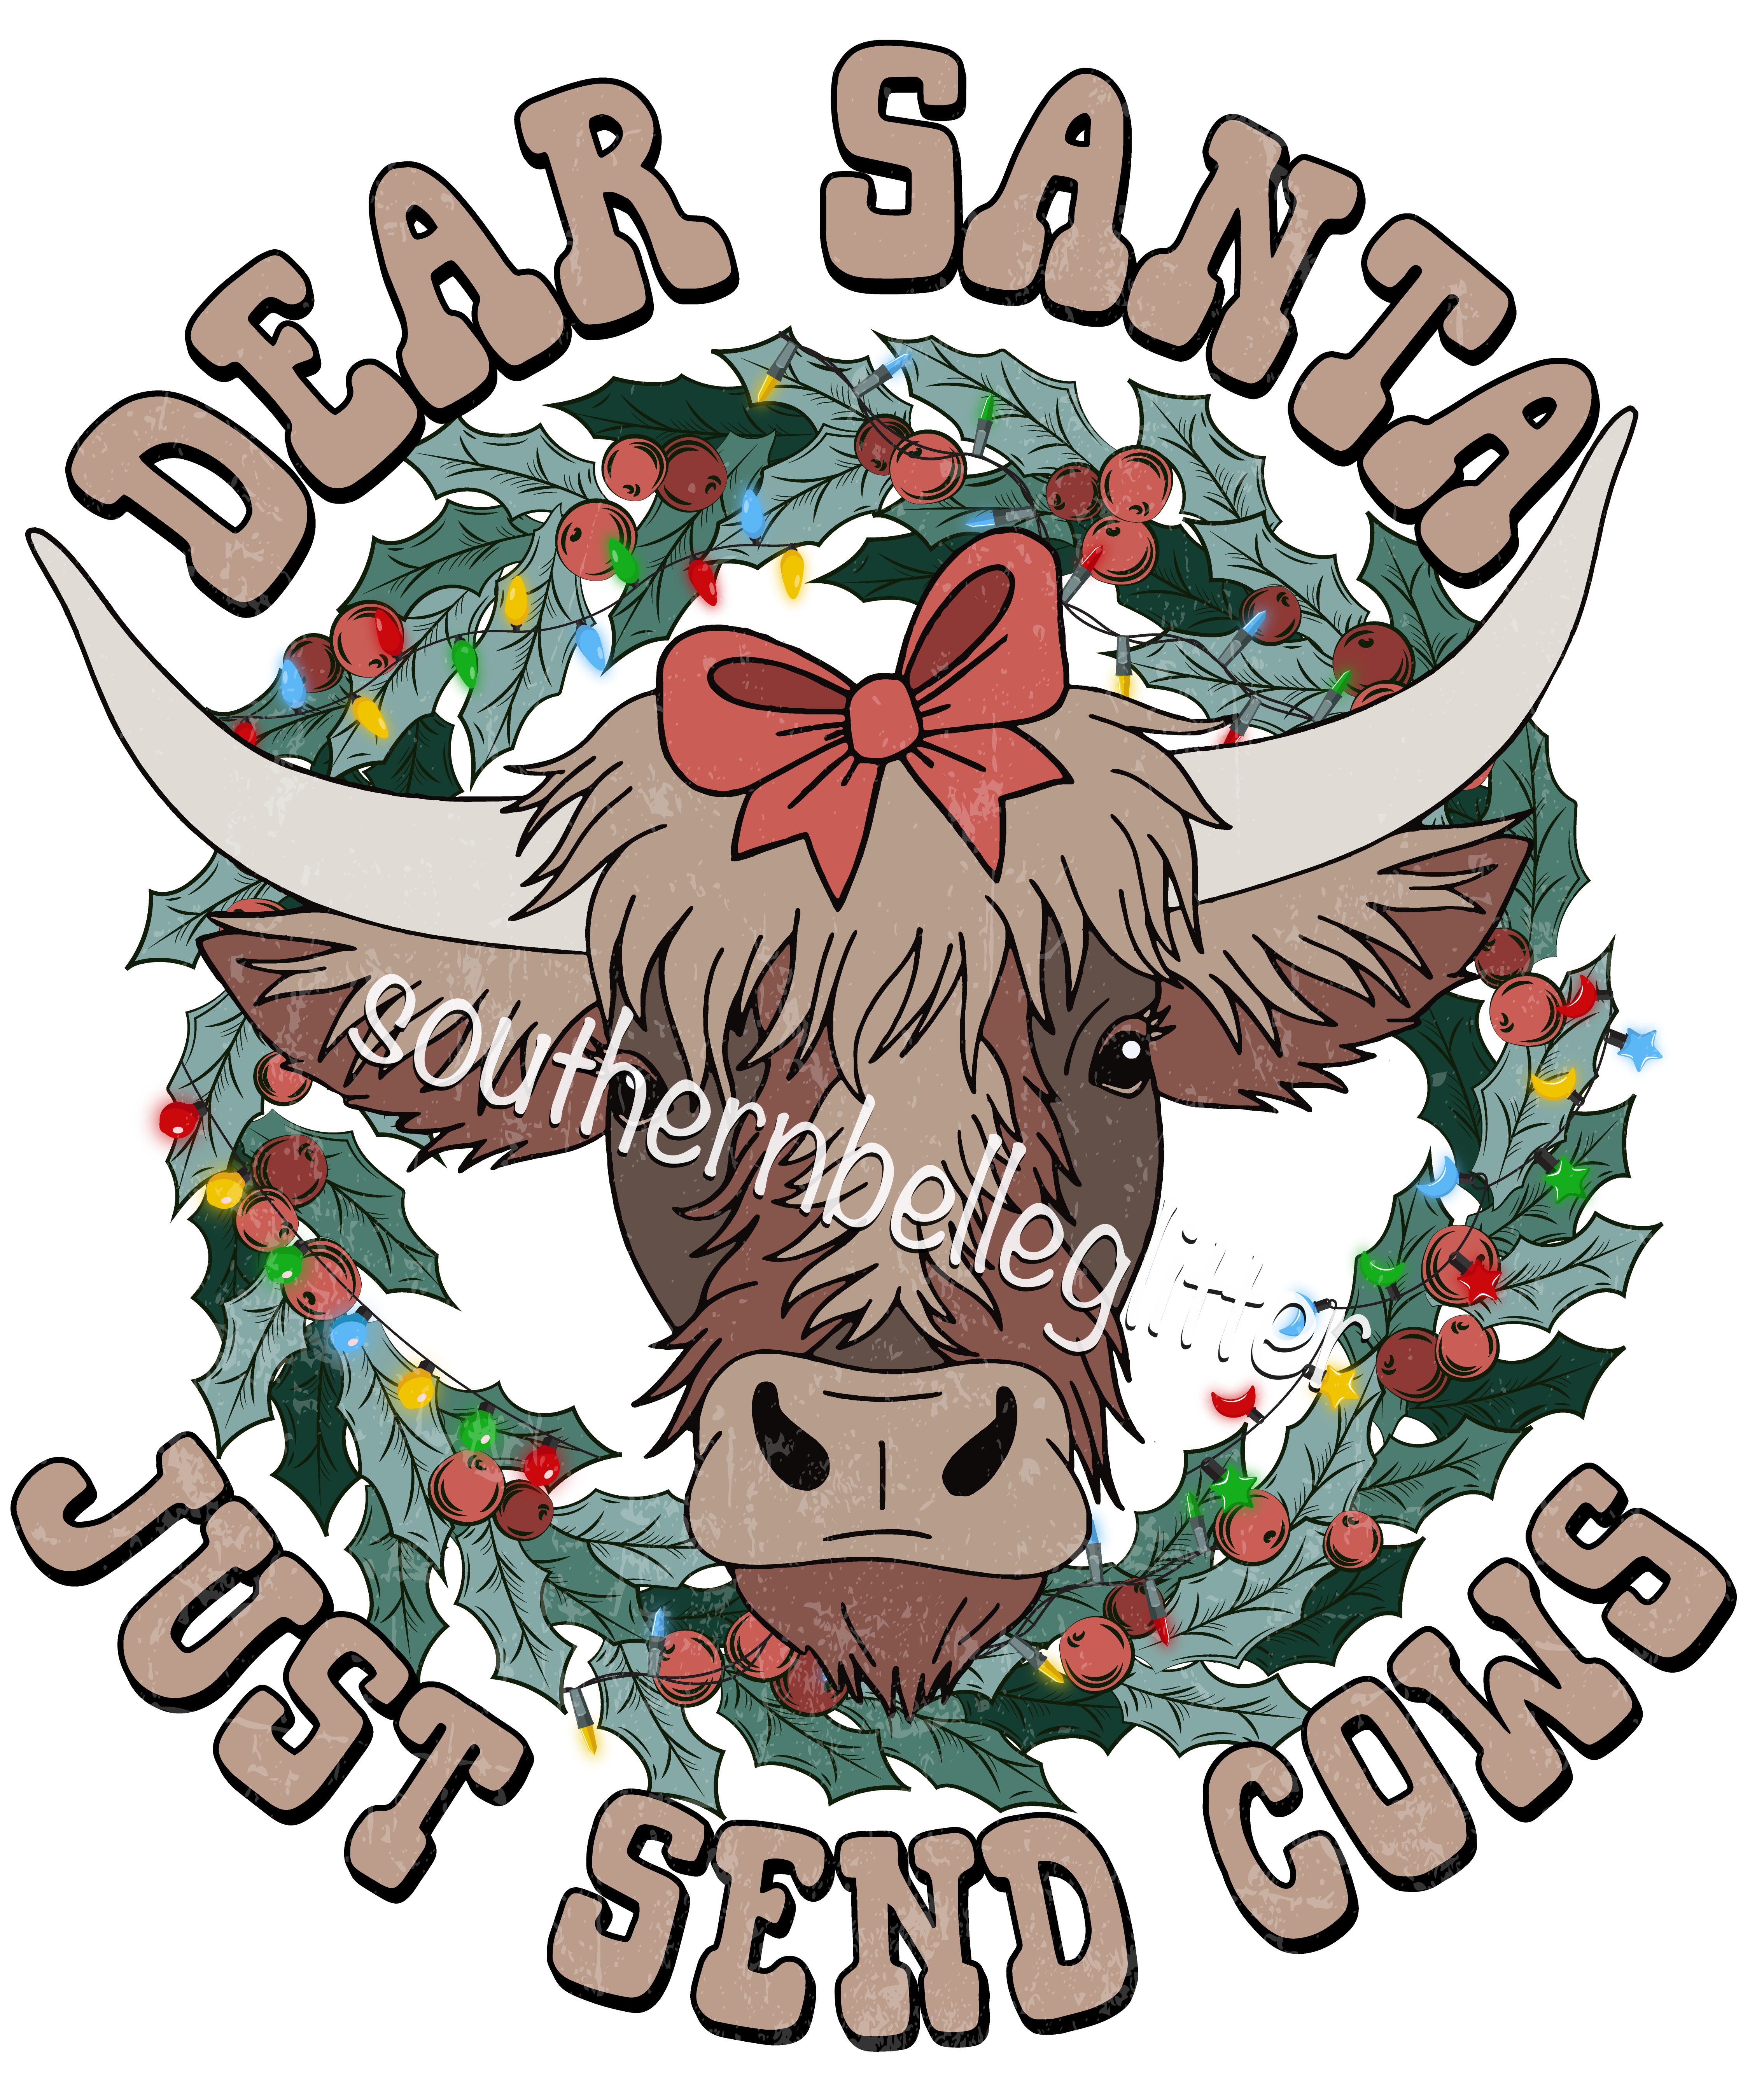 Dear Santa Just send Cows